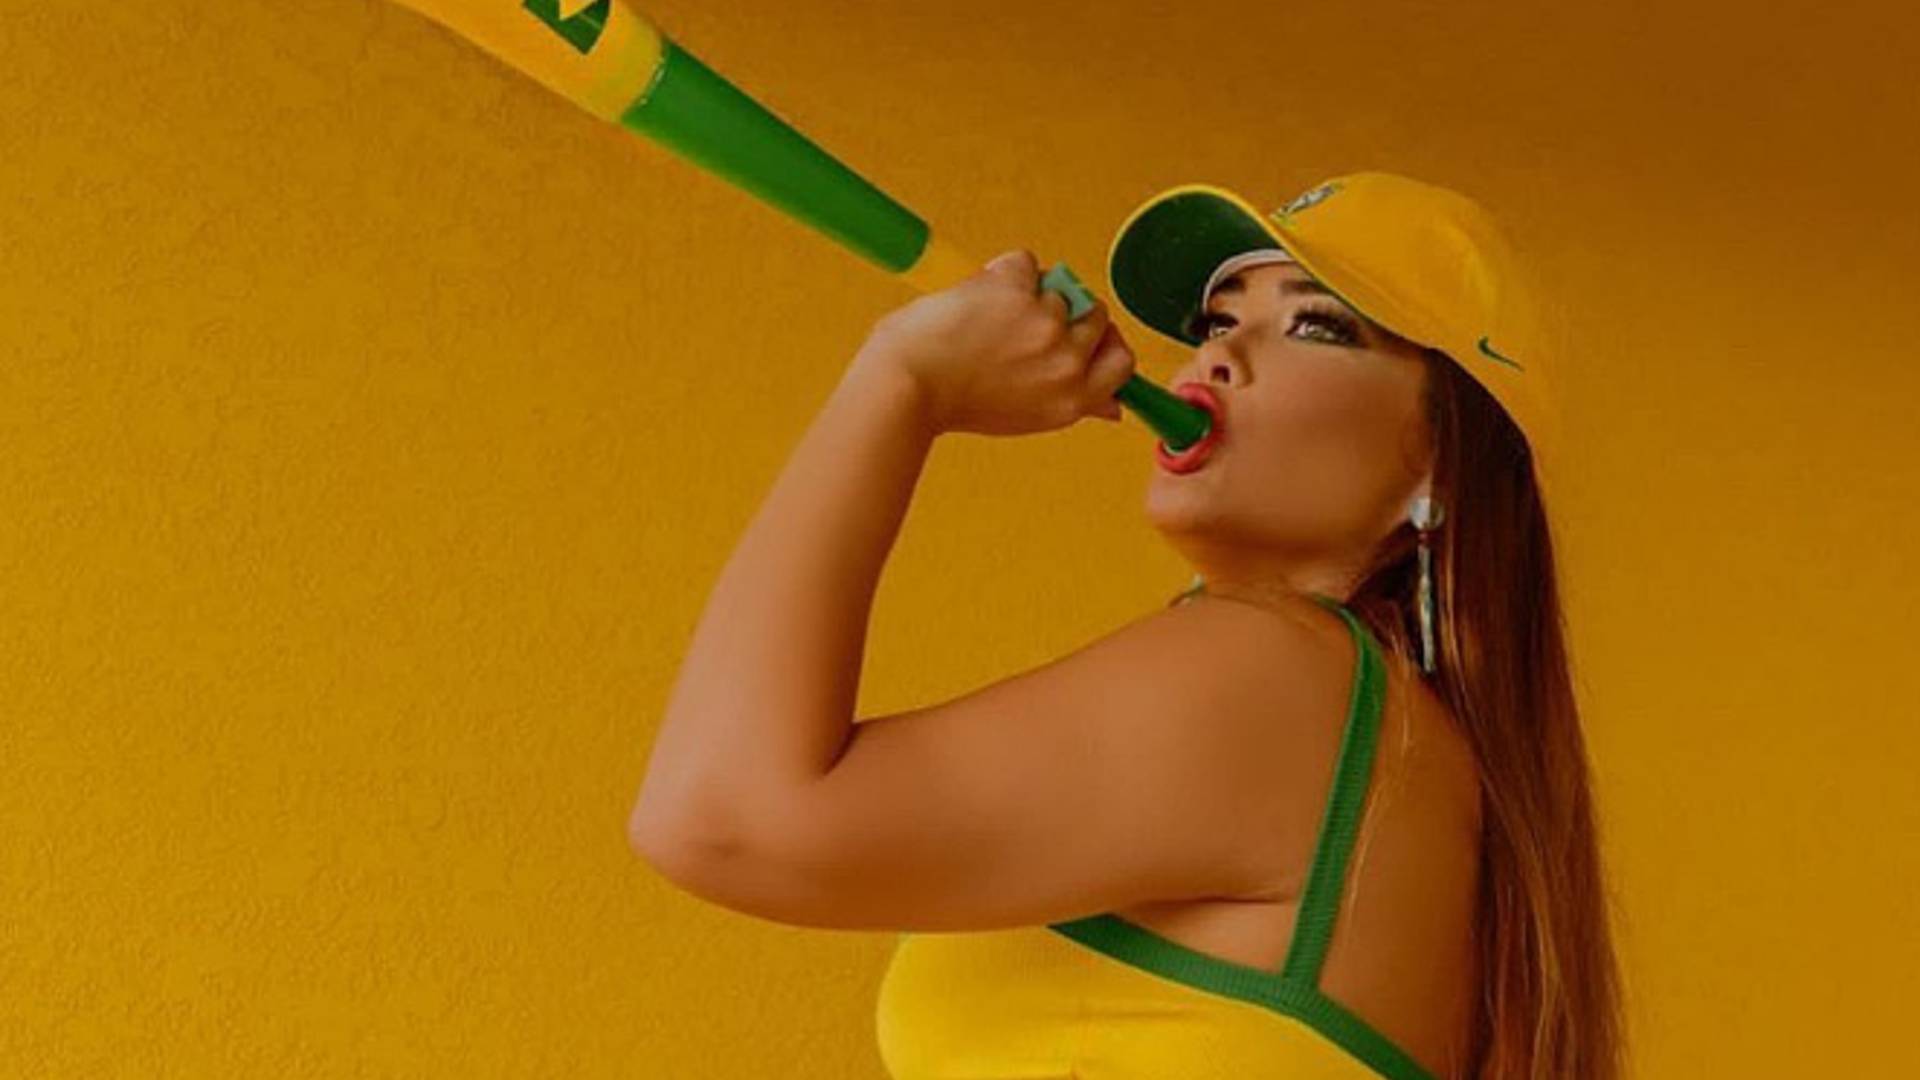 De calcinha PP verde e amarela, Geisy Arruda coloca vuvuzela dentro da boca: “Empinando” - Metropolitana FM